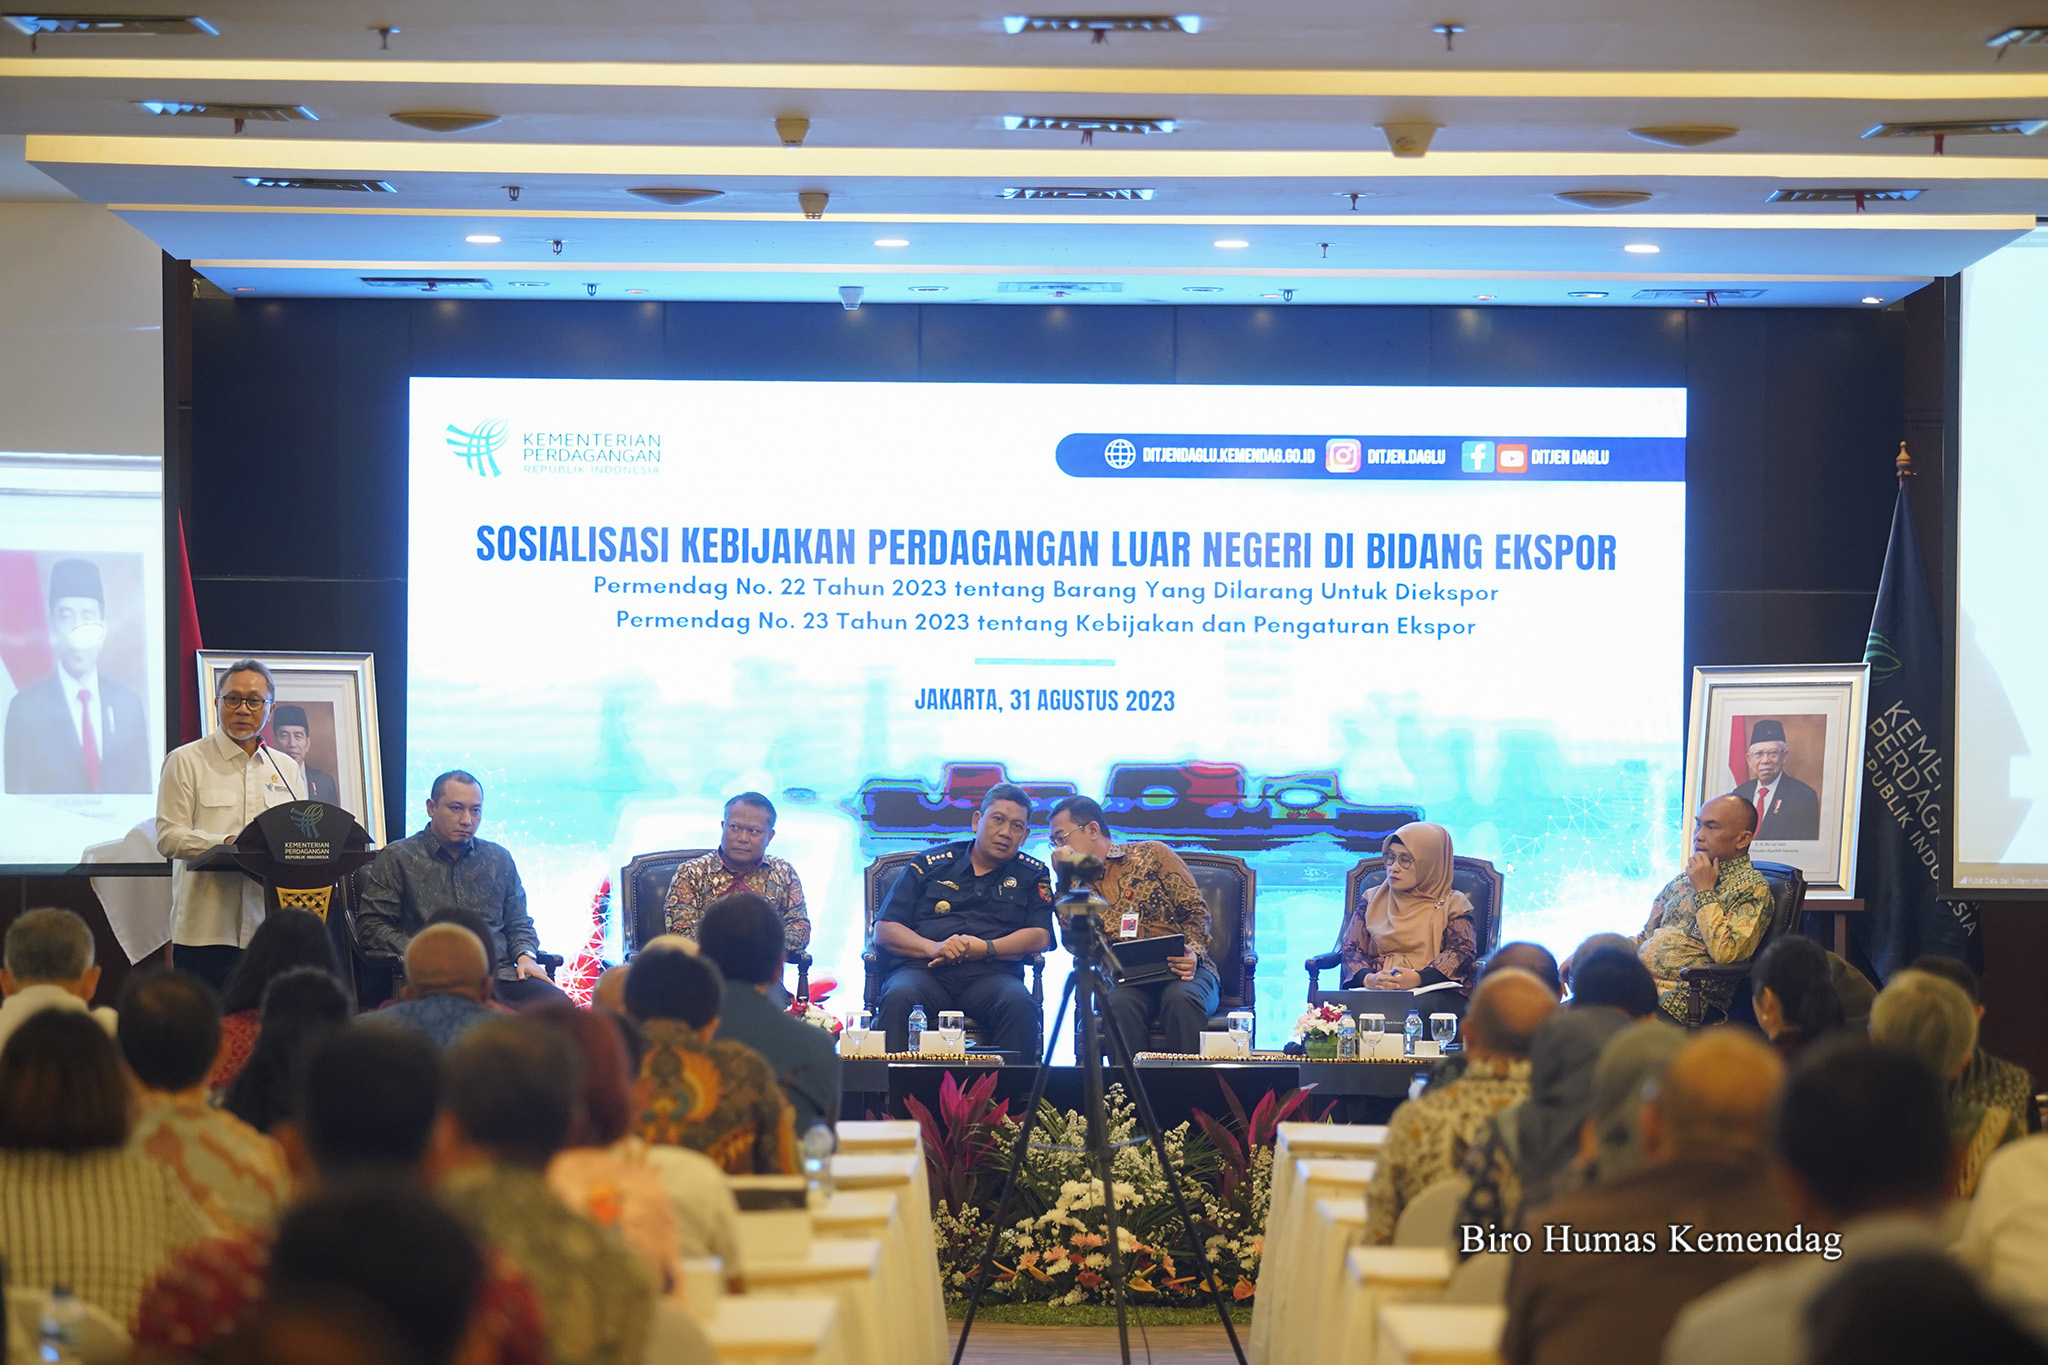 Menteri Perdagangan, Zulkifli Hasan memberikan arahan pada Sosialisasi Kebijakan Perdagangan Luar Negeri Bidang Ekspor yang diselenggarakan secara hibrida di Kantor Kementerian Perdagangan, Jakarta, Kamis (31 Agt).